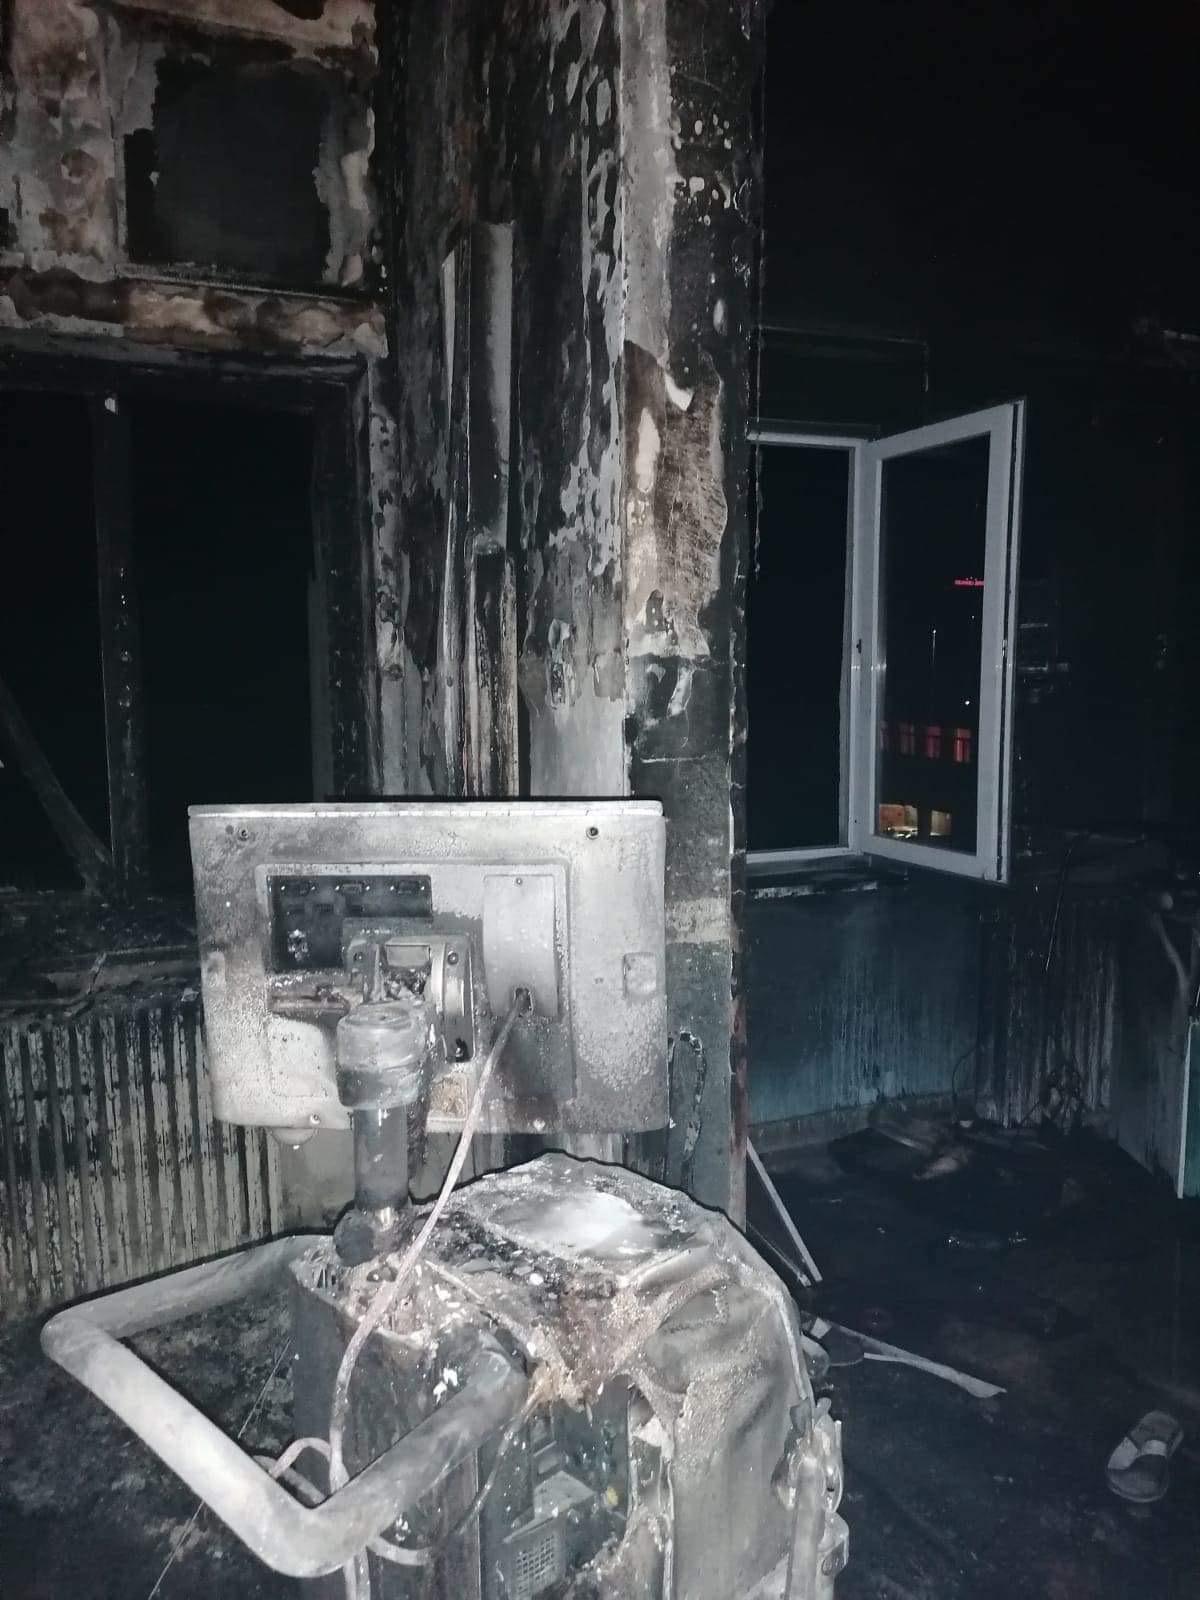 Incendiu violent la Spitalul Judeţean Piatra Neamţ. Zece persoane au murit, iar medicul de gardă este în stare critică - Imaginea 3